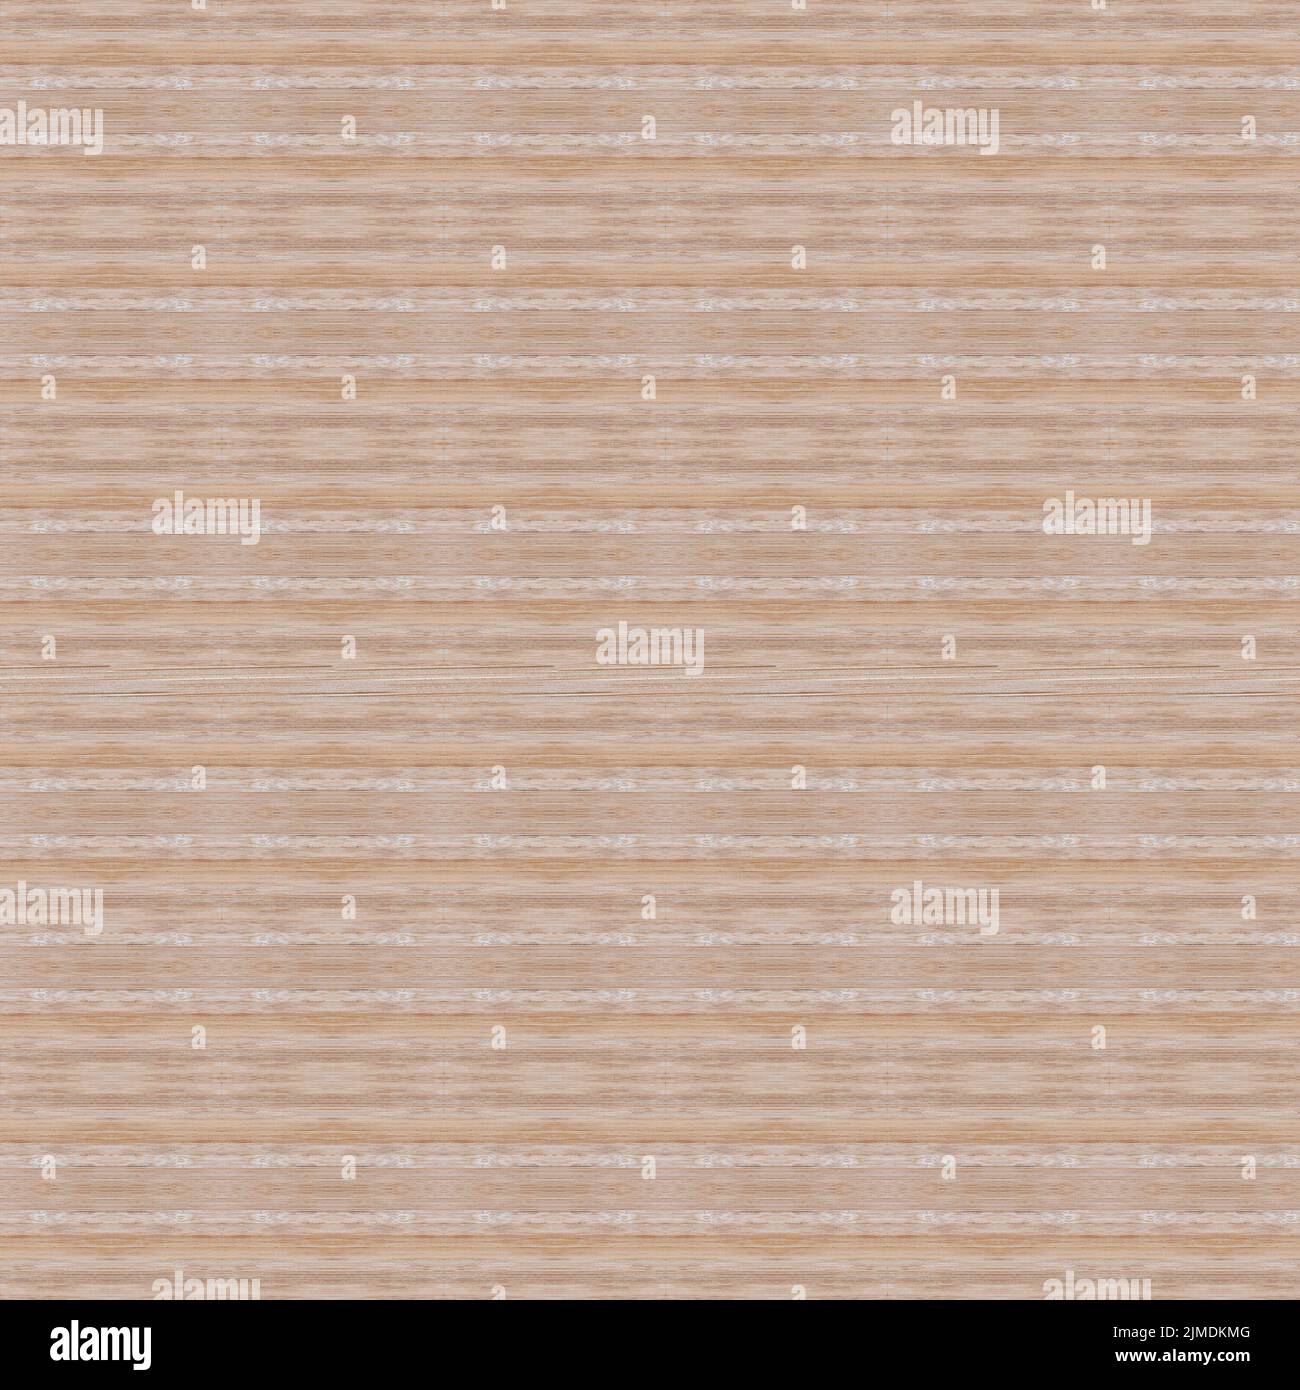 Nahtlose Textur von Strohmatte. Nahaufnahme der Holzmatte. Teppich aus asiatischem Bambusgewebe. Hintergrund Bambusstäbchen mit Fadeneinheit Stockfoto